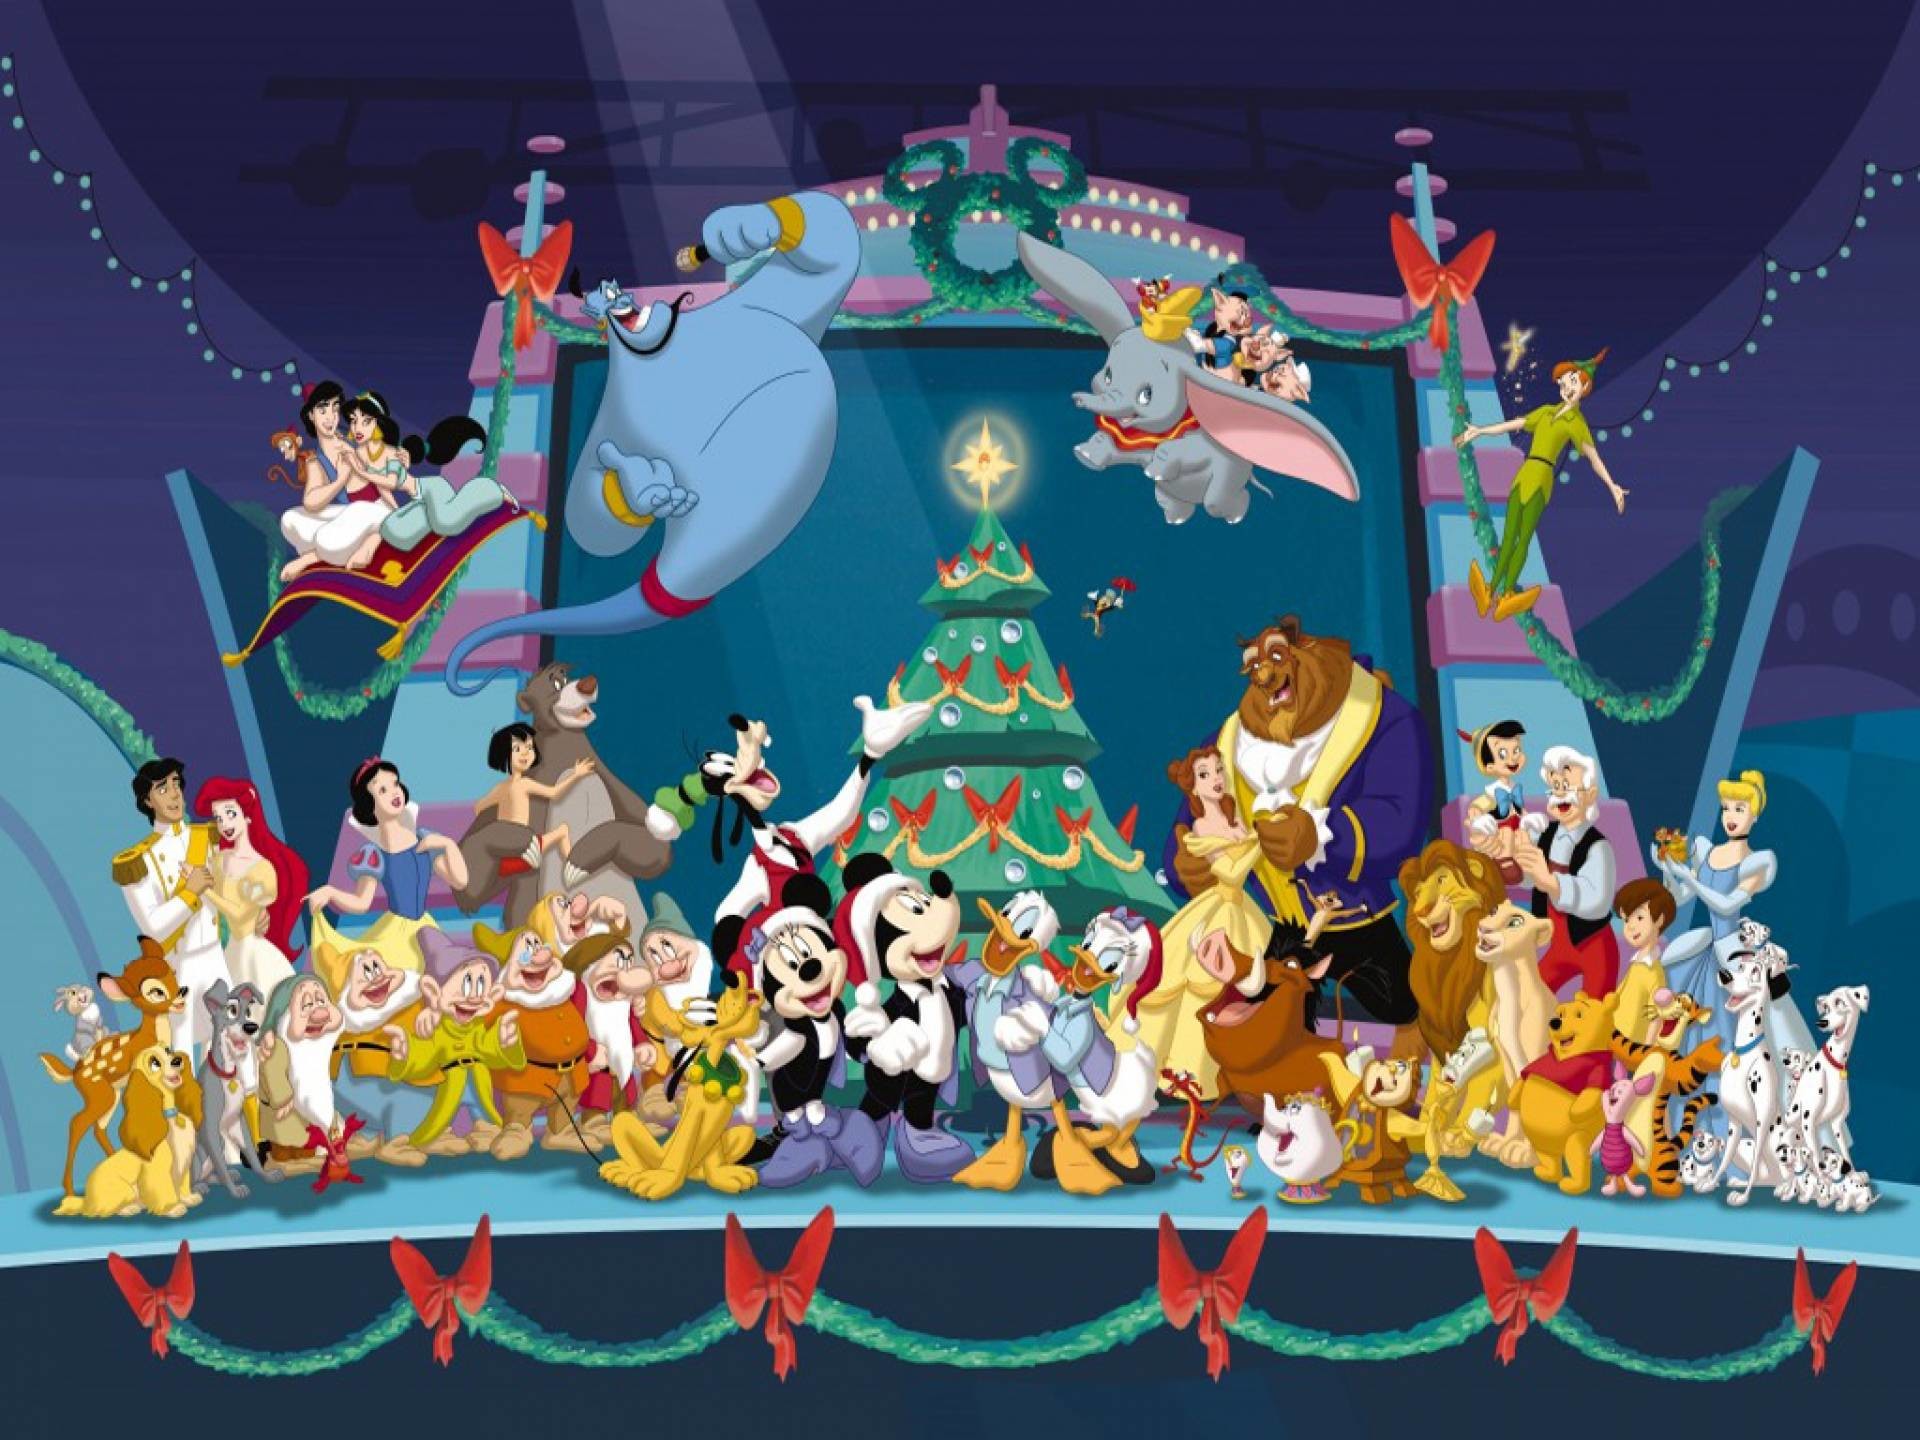 Hình nền Giáng sinh Disney - Sắp đến Giáng sinh rồi! Tại sao không làm mới màn hình của bạn với những hình nền Giáng sinh Disney đầy sắc màu này? Chúng tôi tự tin rằng những hình ảnh đáng yêu này sẽ mang lại không khí ấm áp của mùa lễ hội đến cho người dùng.